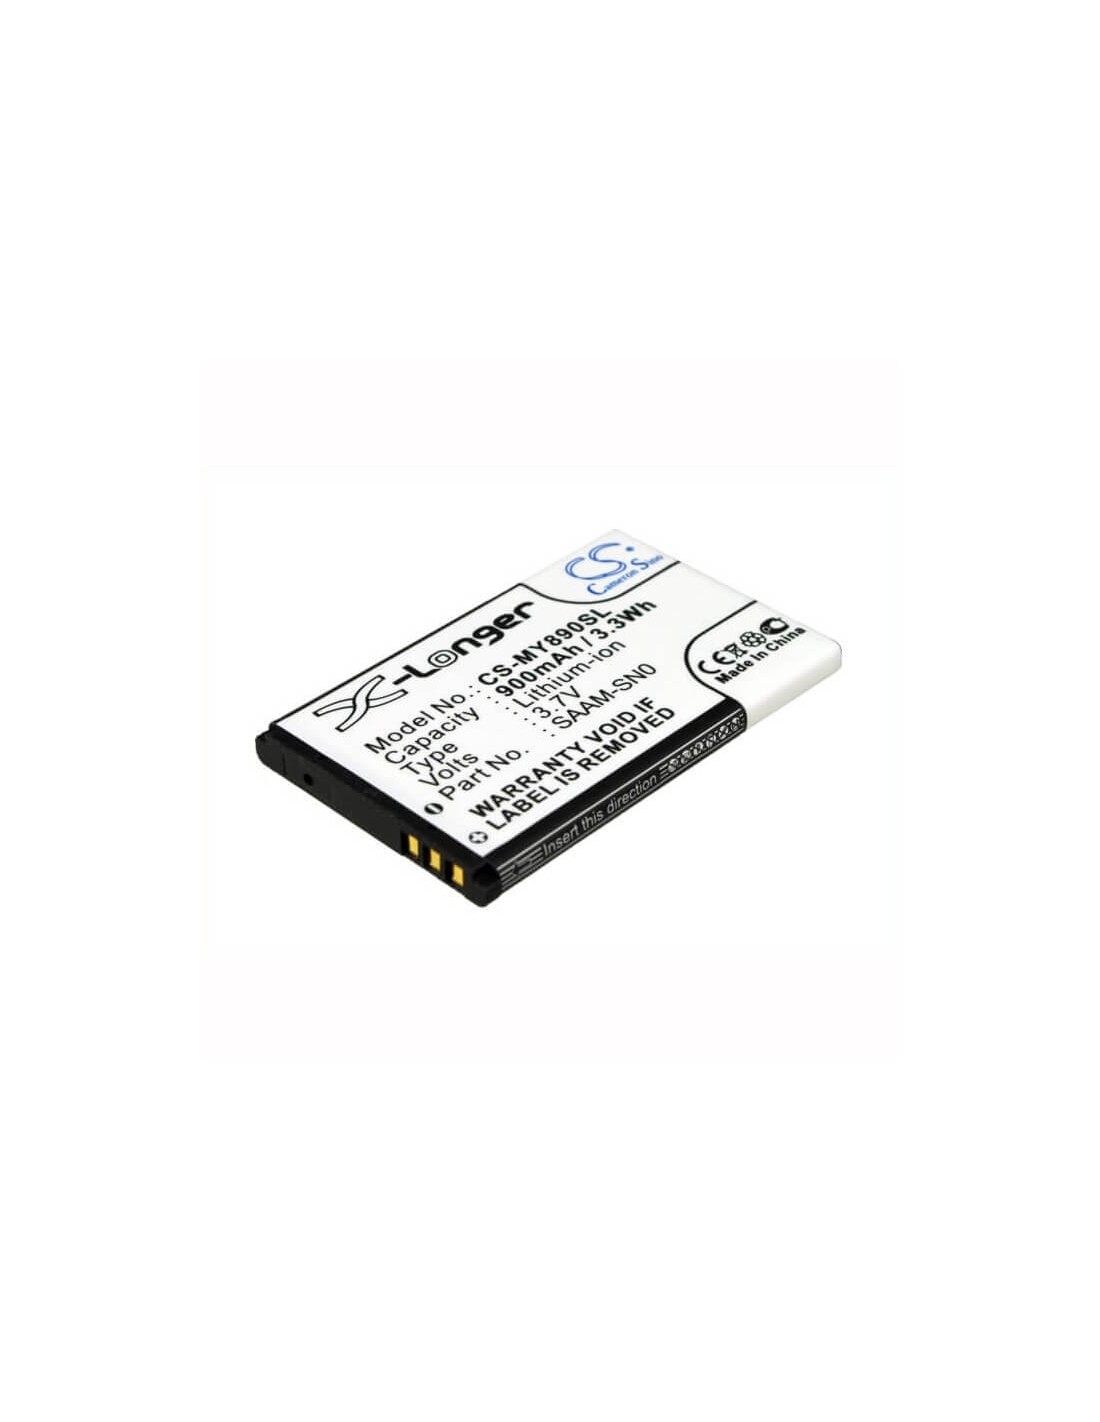 Battery for MYPHONE 3350 3.7V, 900mAh - 3.33Wh